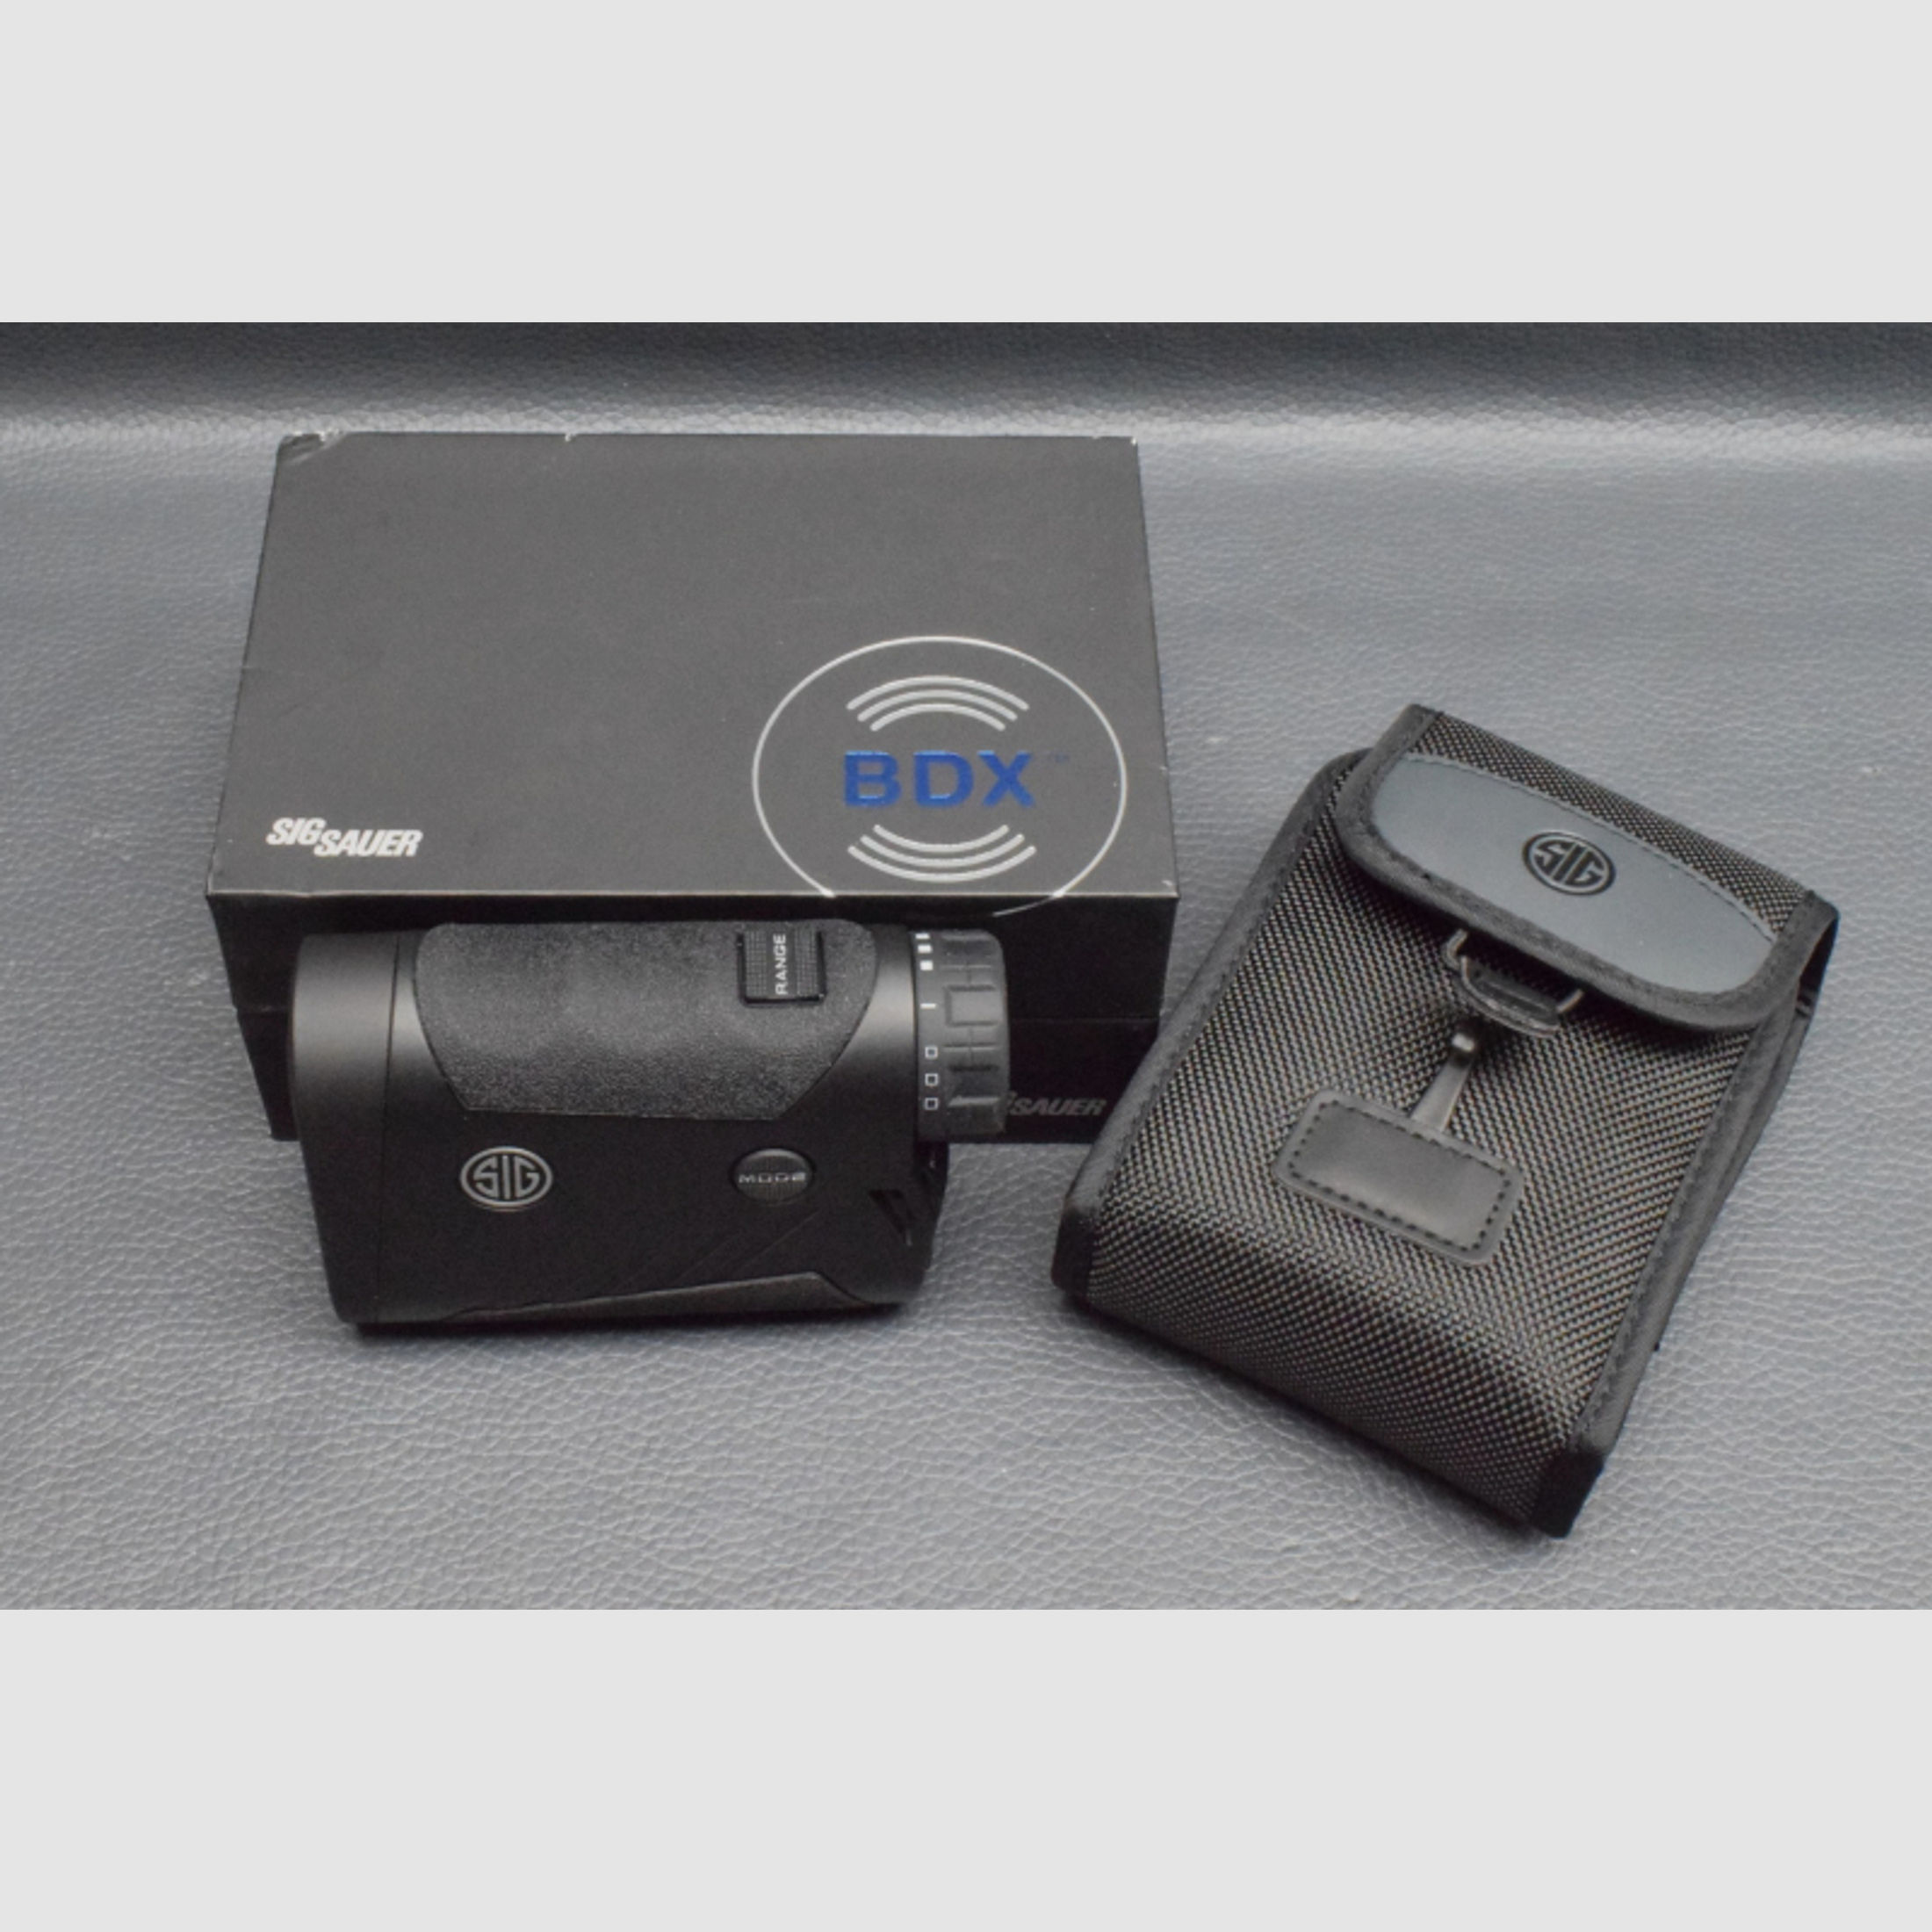 KILO 1800 BDX Laser Entfernungsmesser, Neuware aus Geschäftsauflösung